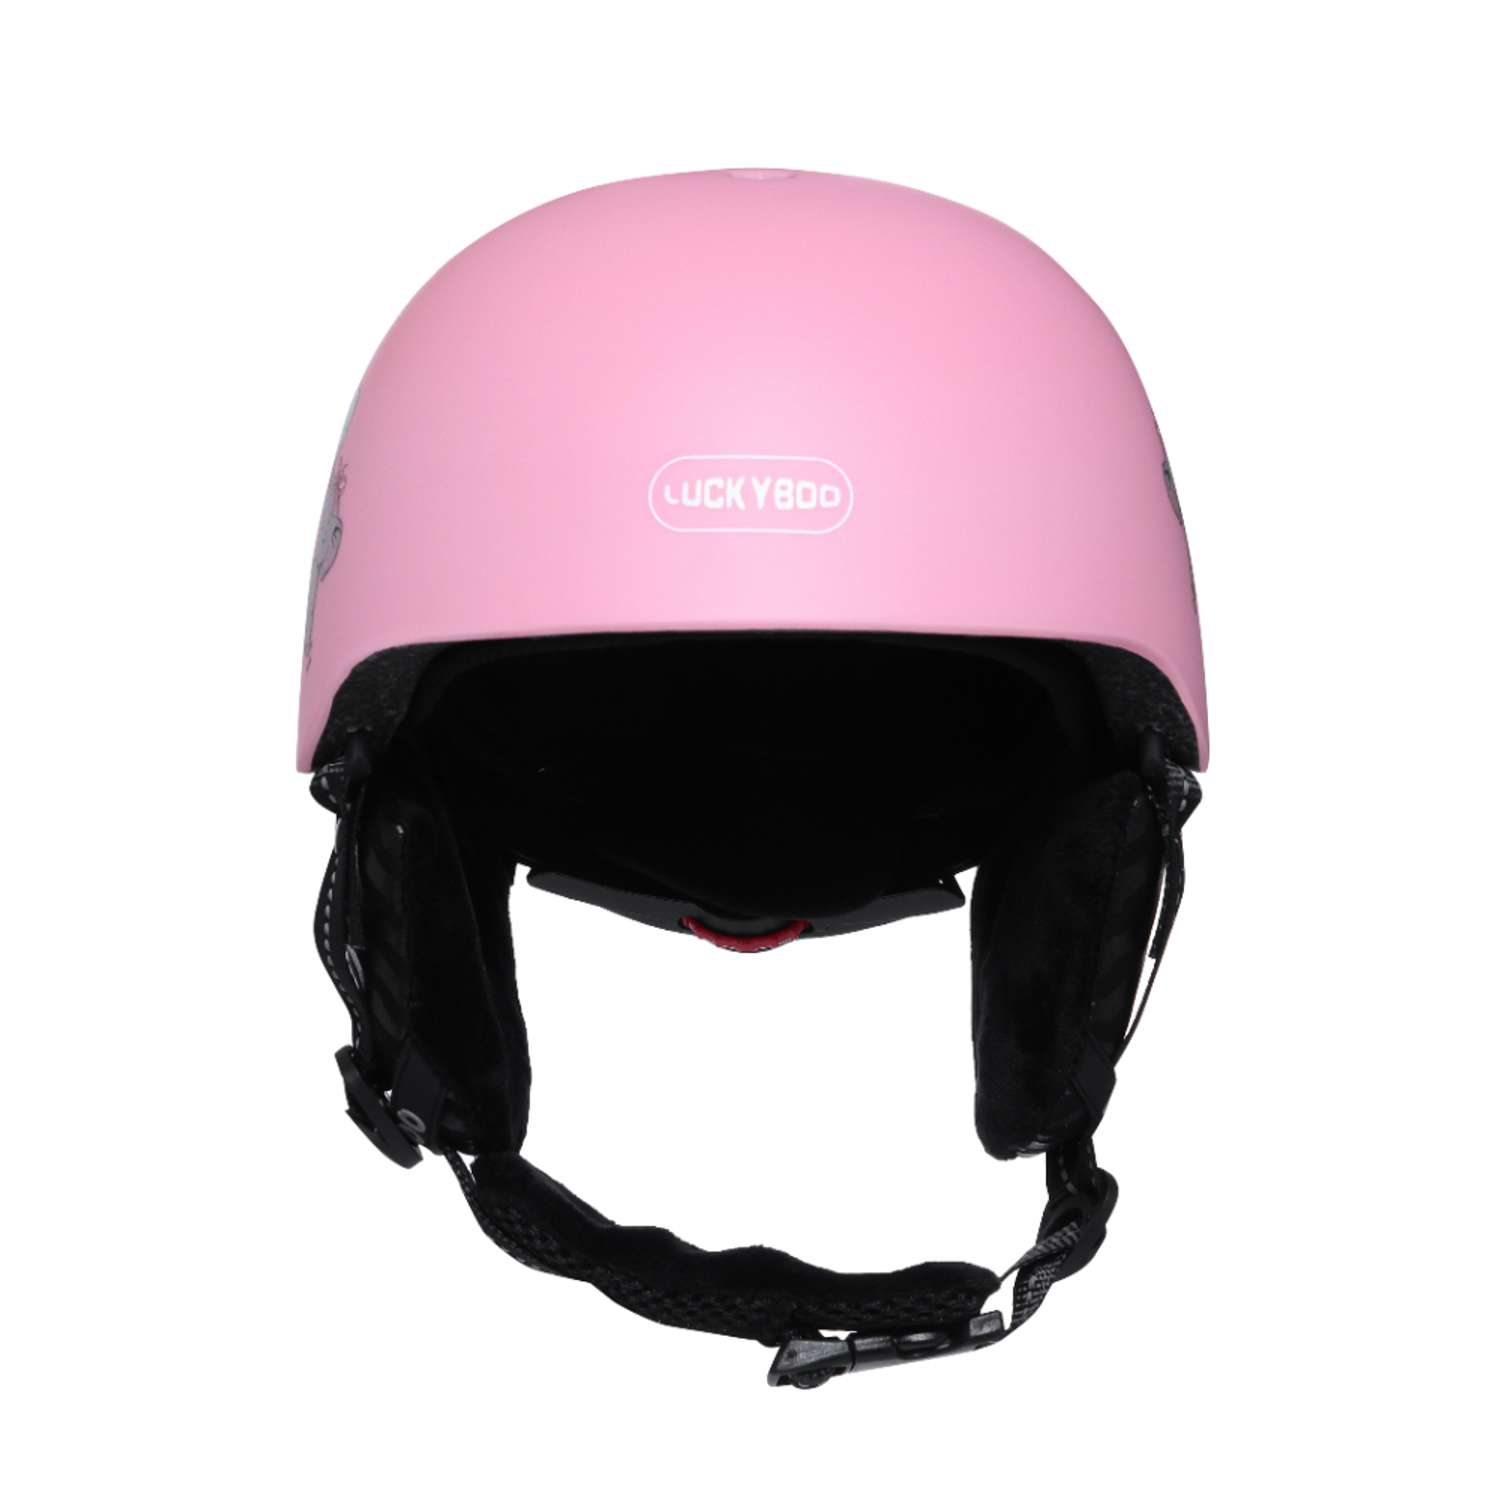 Шлем Future Luckyboo розовый S - фото 1